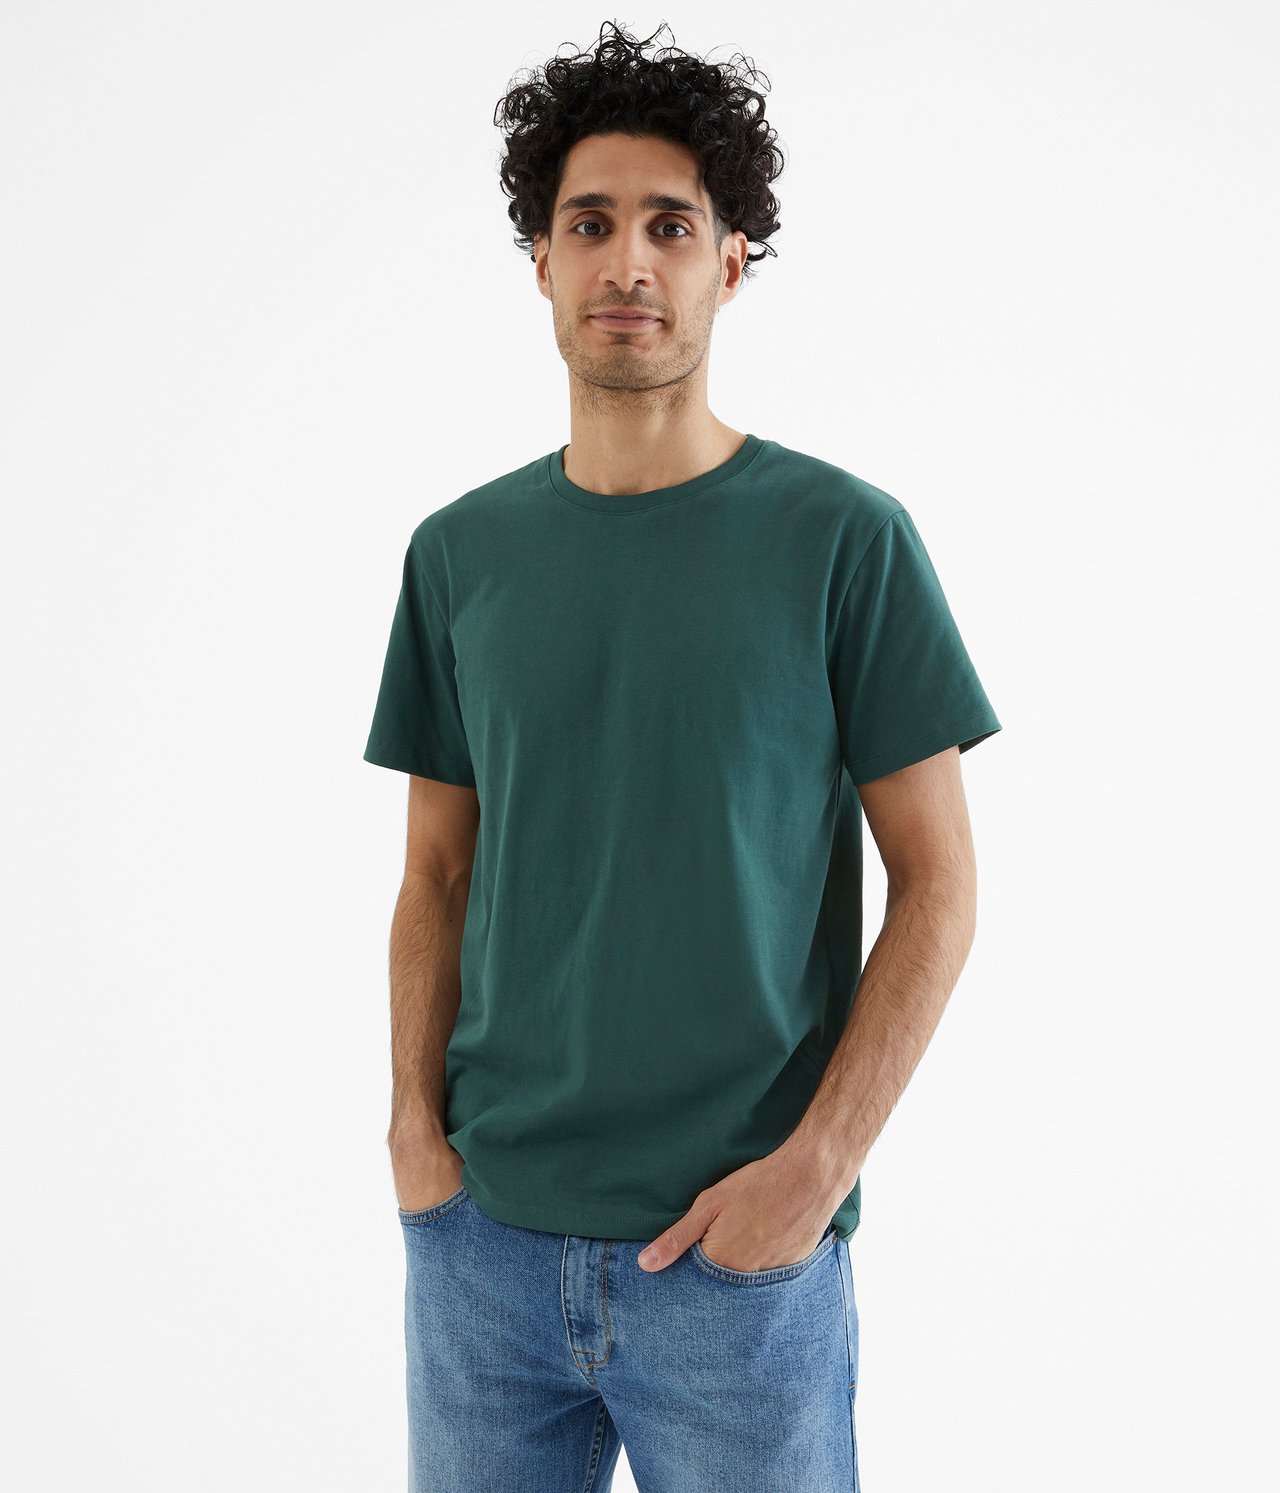 T-paita, jossa pyöreä pääntie - Tummanvihreä - 1